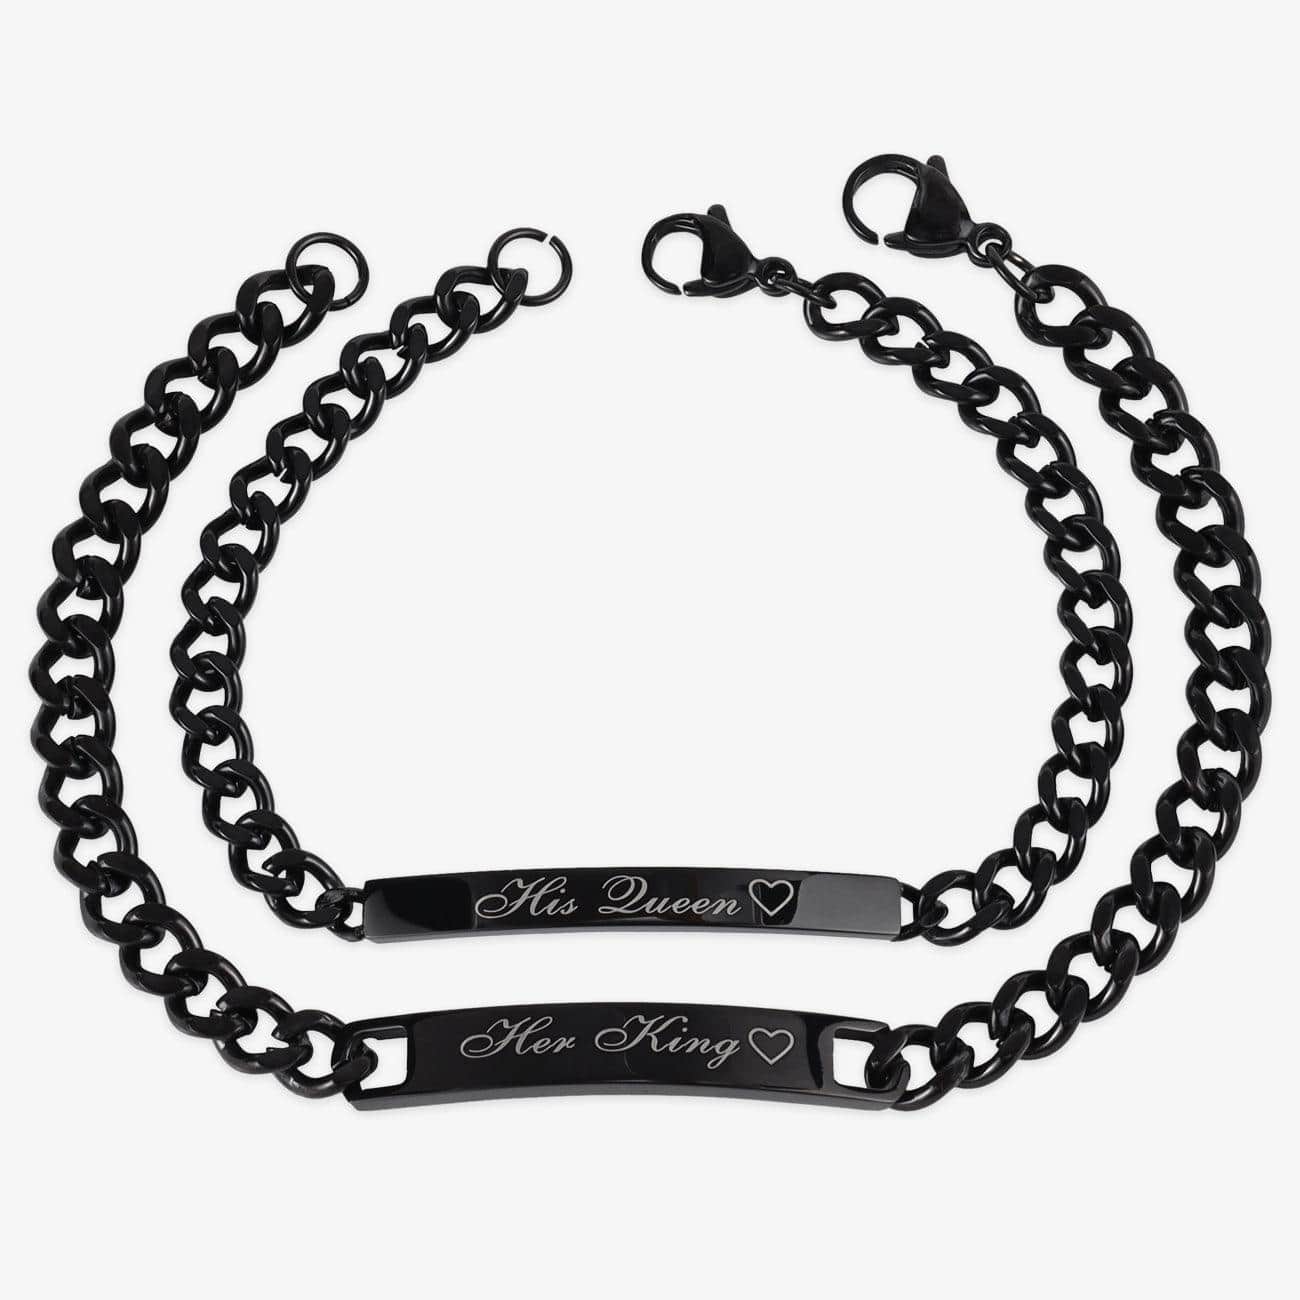 herzschmuck Personalized Black Couple Bracelets Set